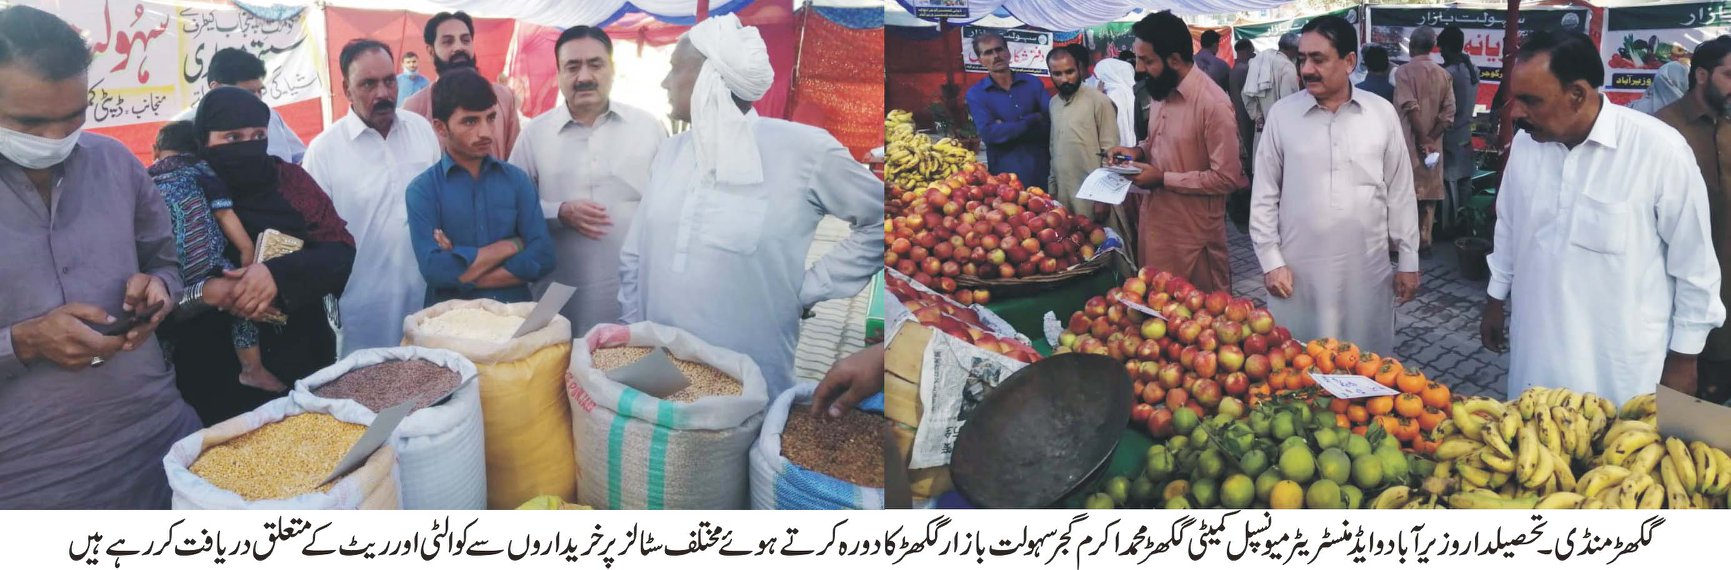 تحصیلدار وزیر آباد و ایڈمنسٹریٹر میونسپل کمیٹی گکھڑ چوہدری محمد اکرم گجر کا تعیناتی کے بعد سہولت بازار گکھڑ کا دورہ